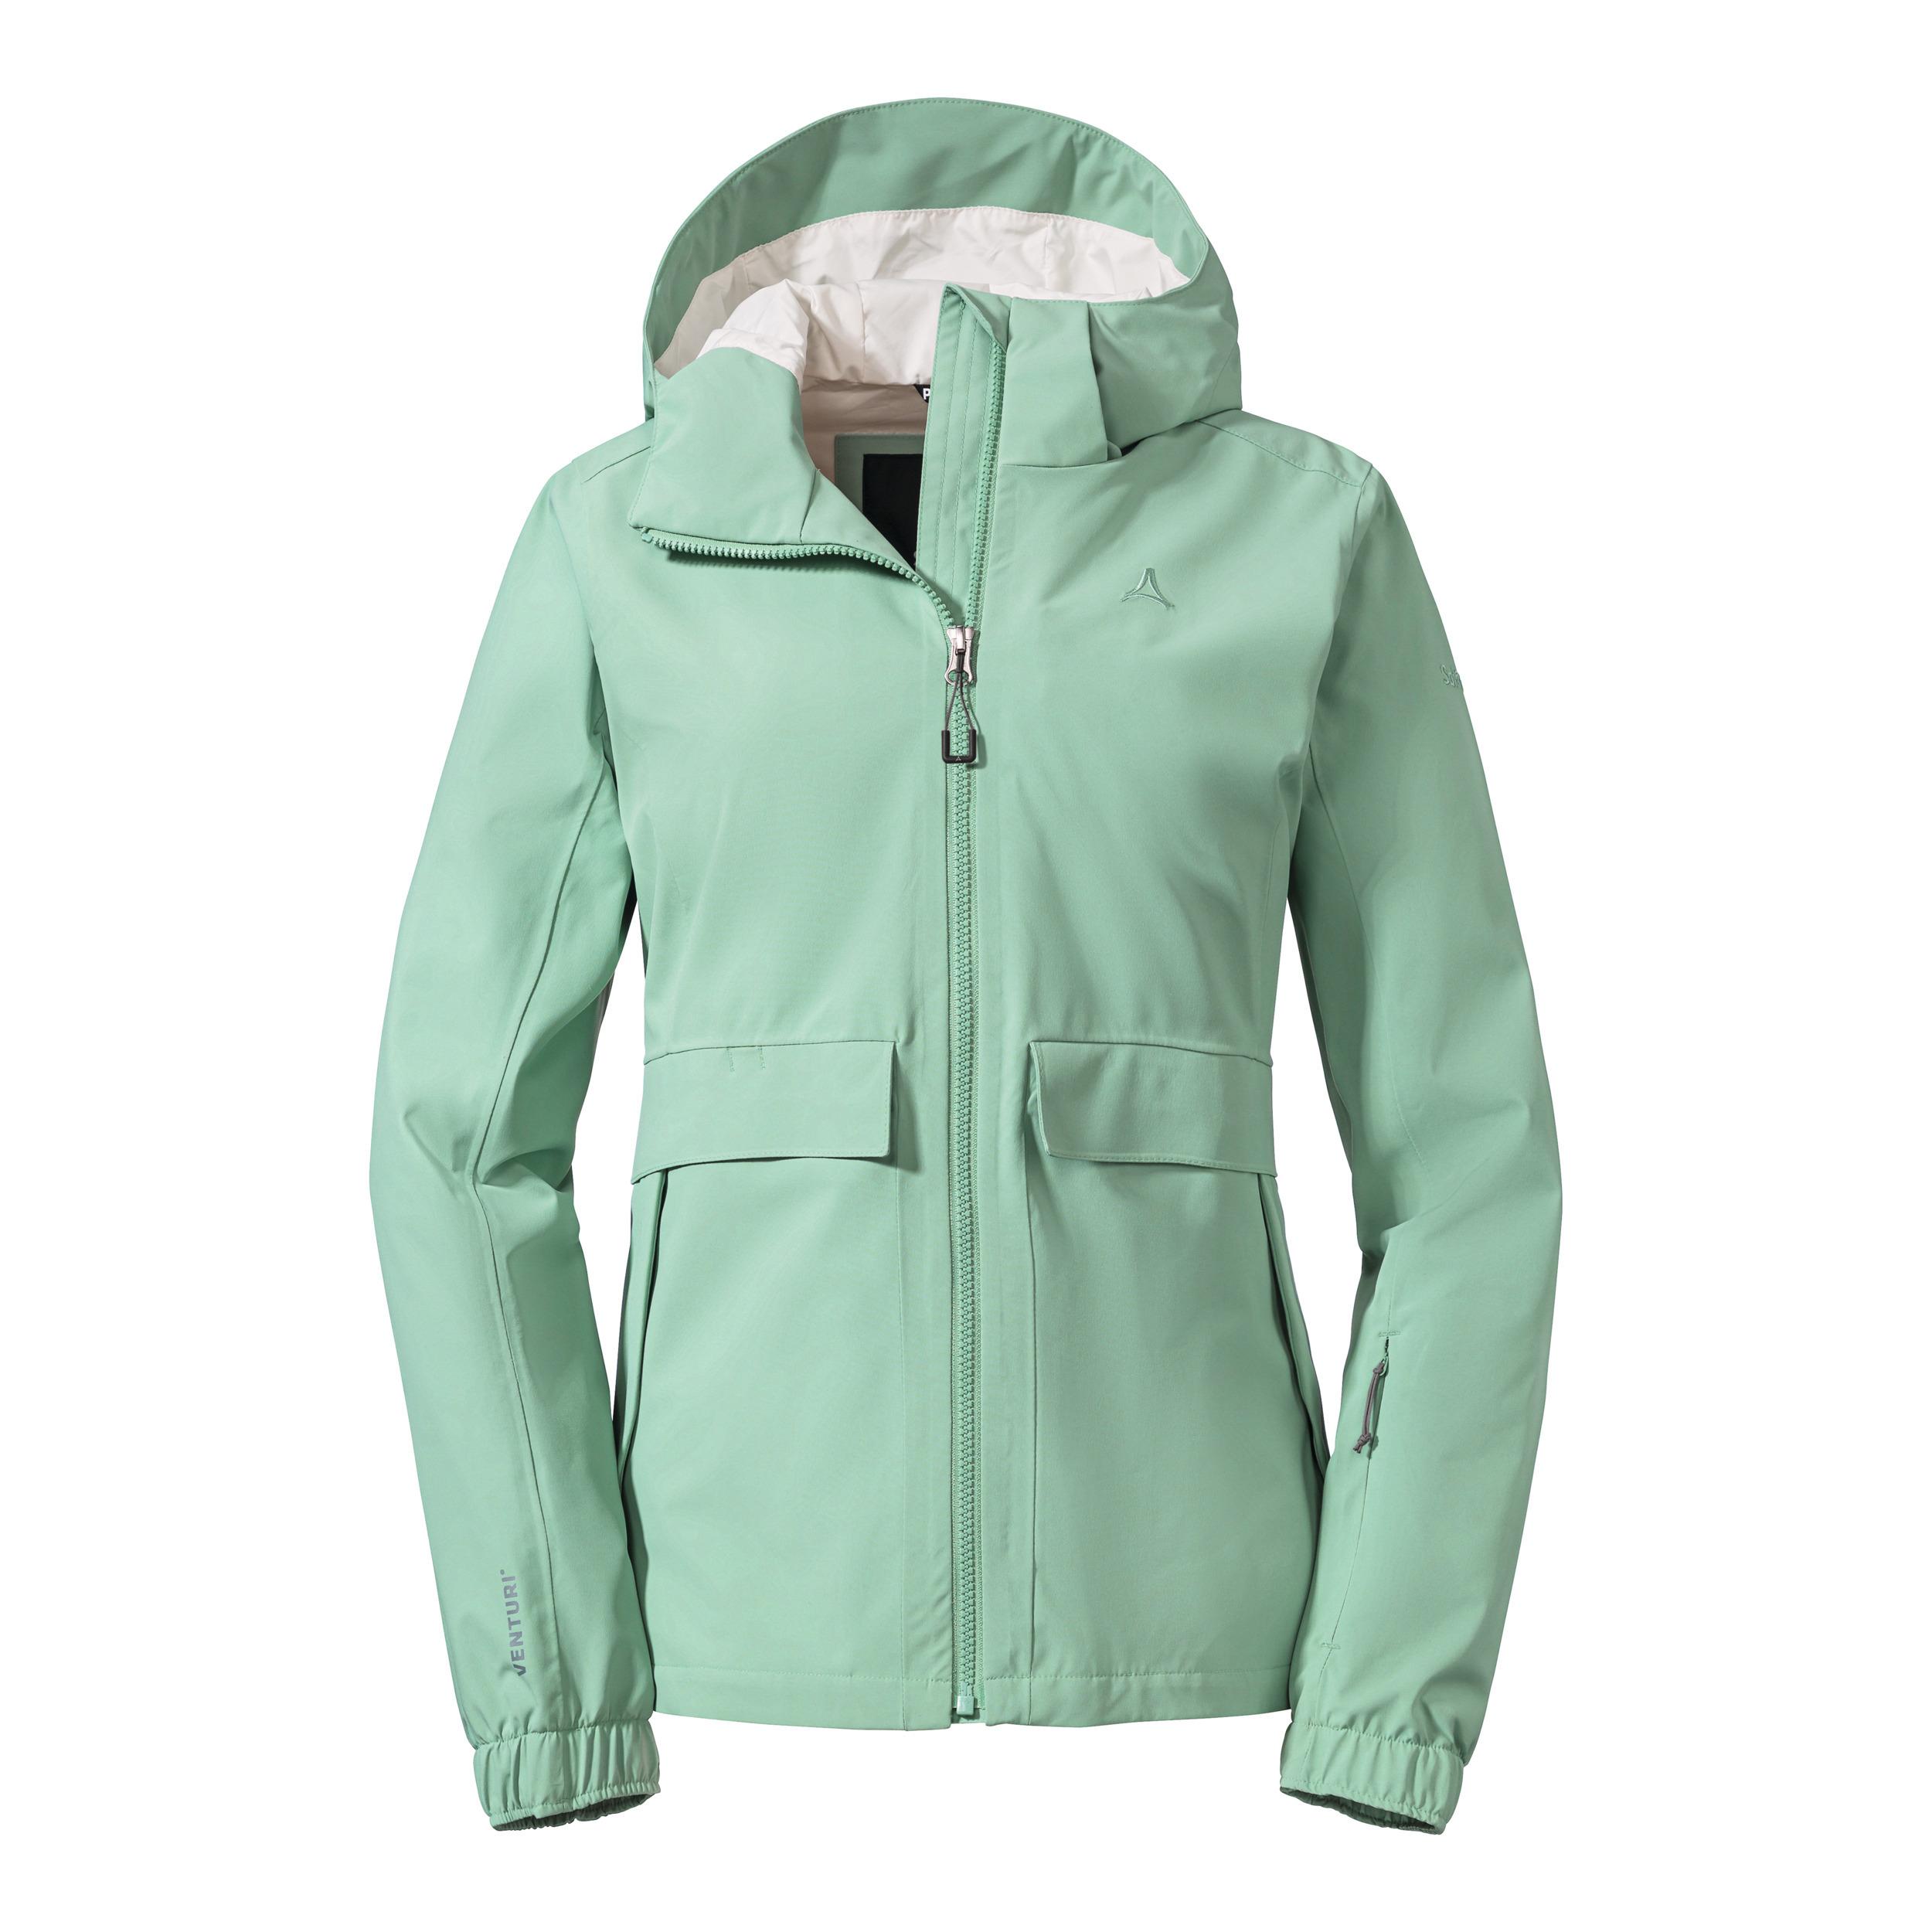 Lausanne kaufen - grün SportScheck Online Funktionsjacke im Schöffel von L Damen Shop Jacket 6055